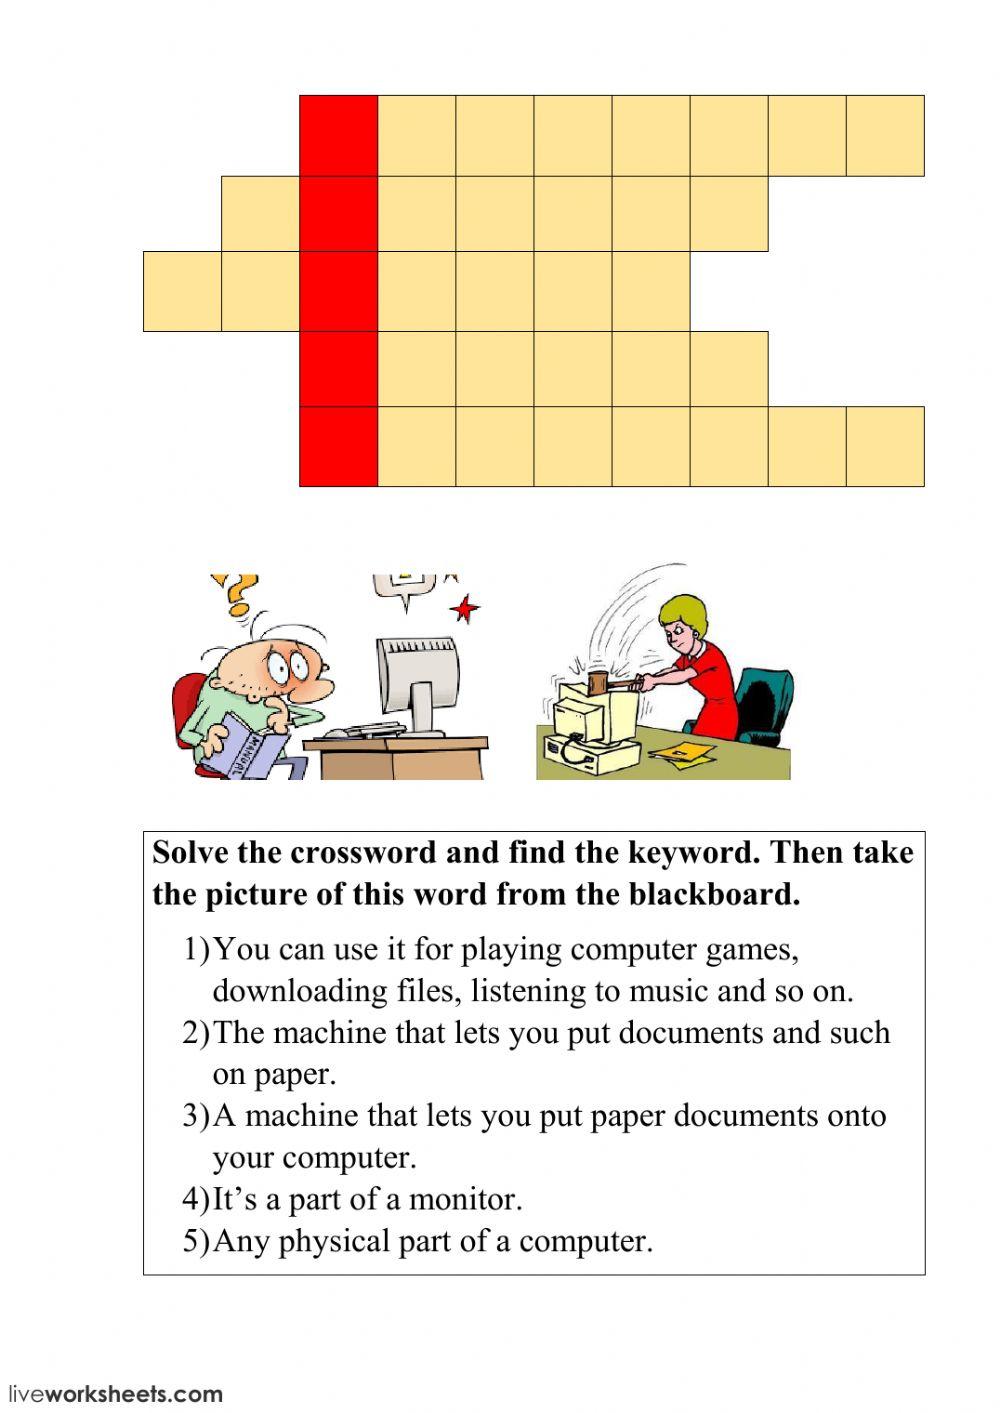 Computer Crossword 1